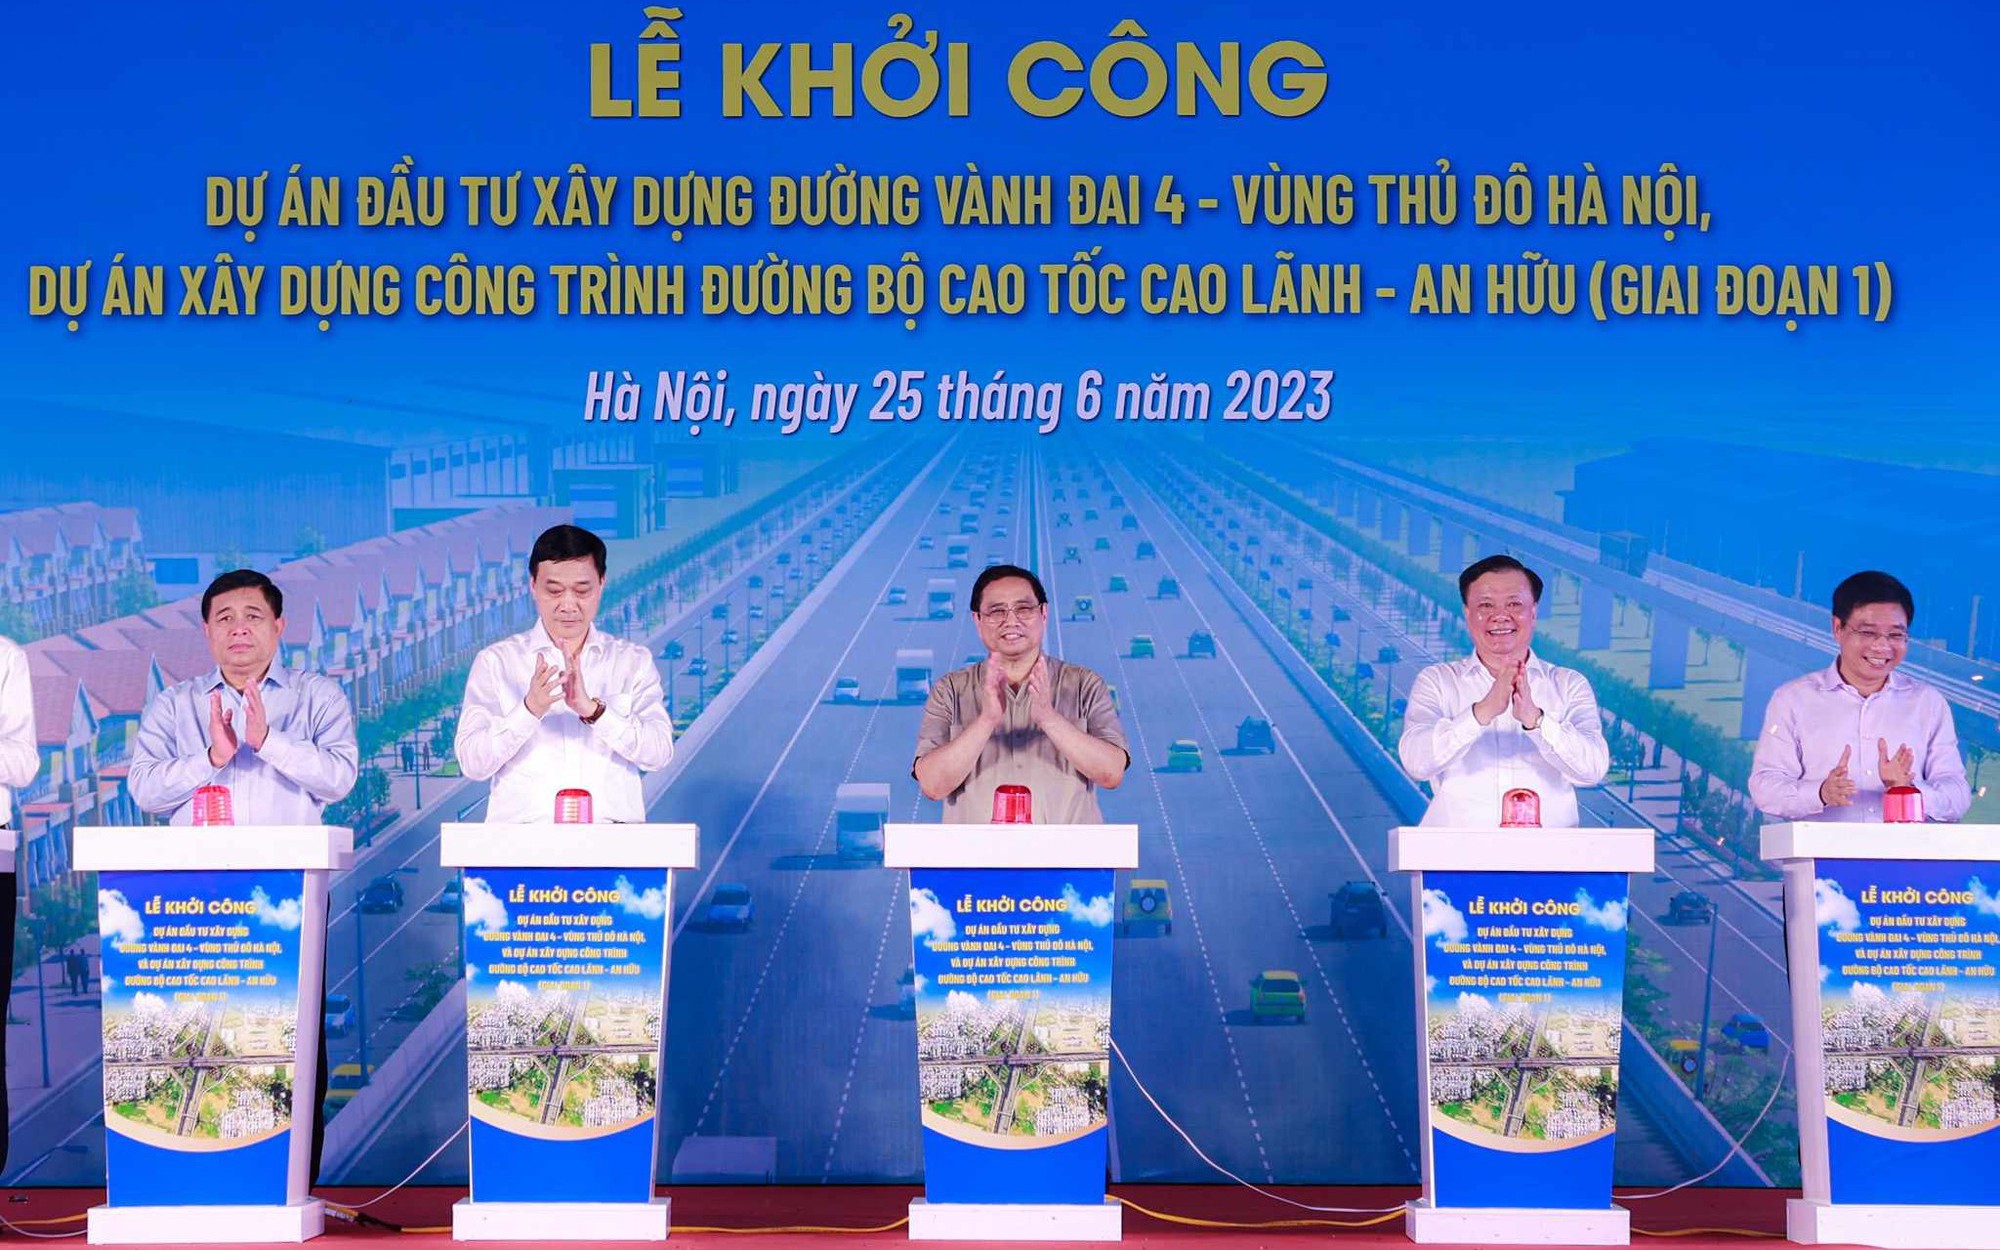 Video: Thủ tướng bấm nút khởi công dự án đường Vành đai 4 Hà Nội 